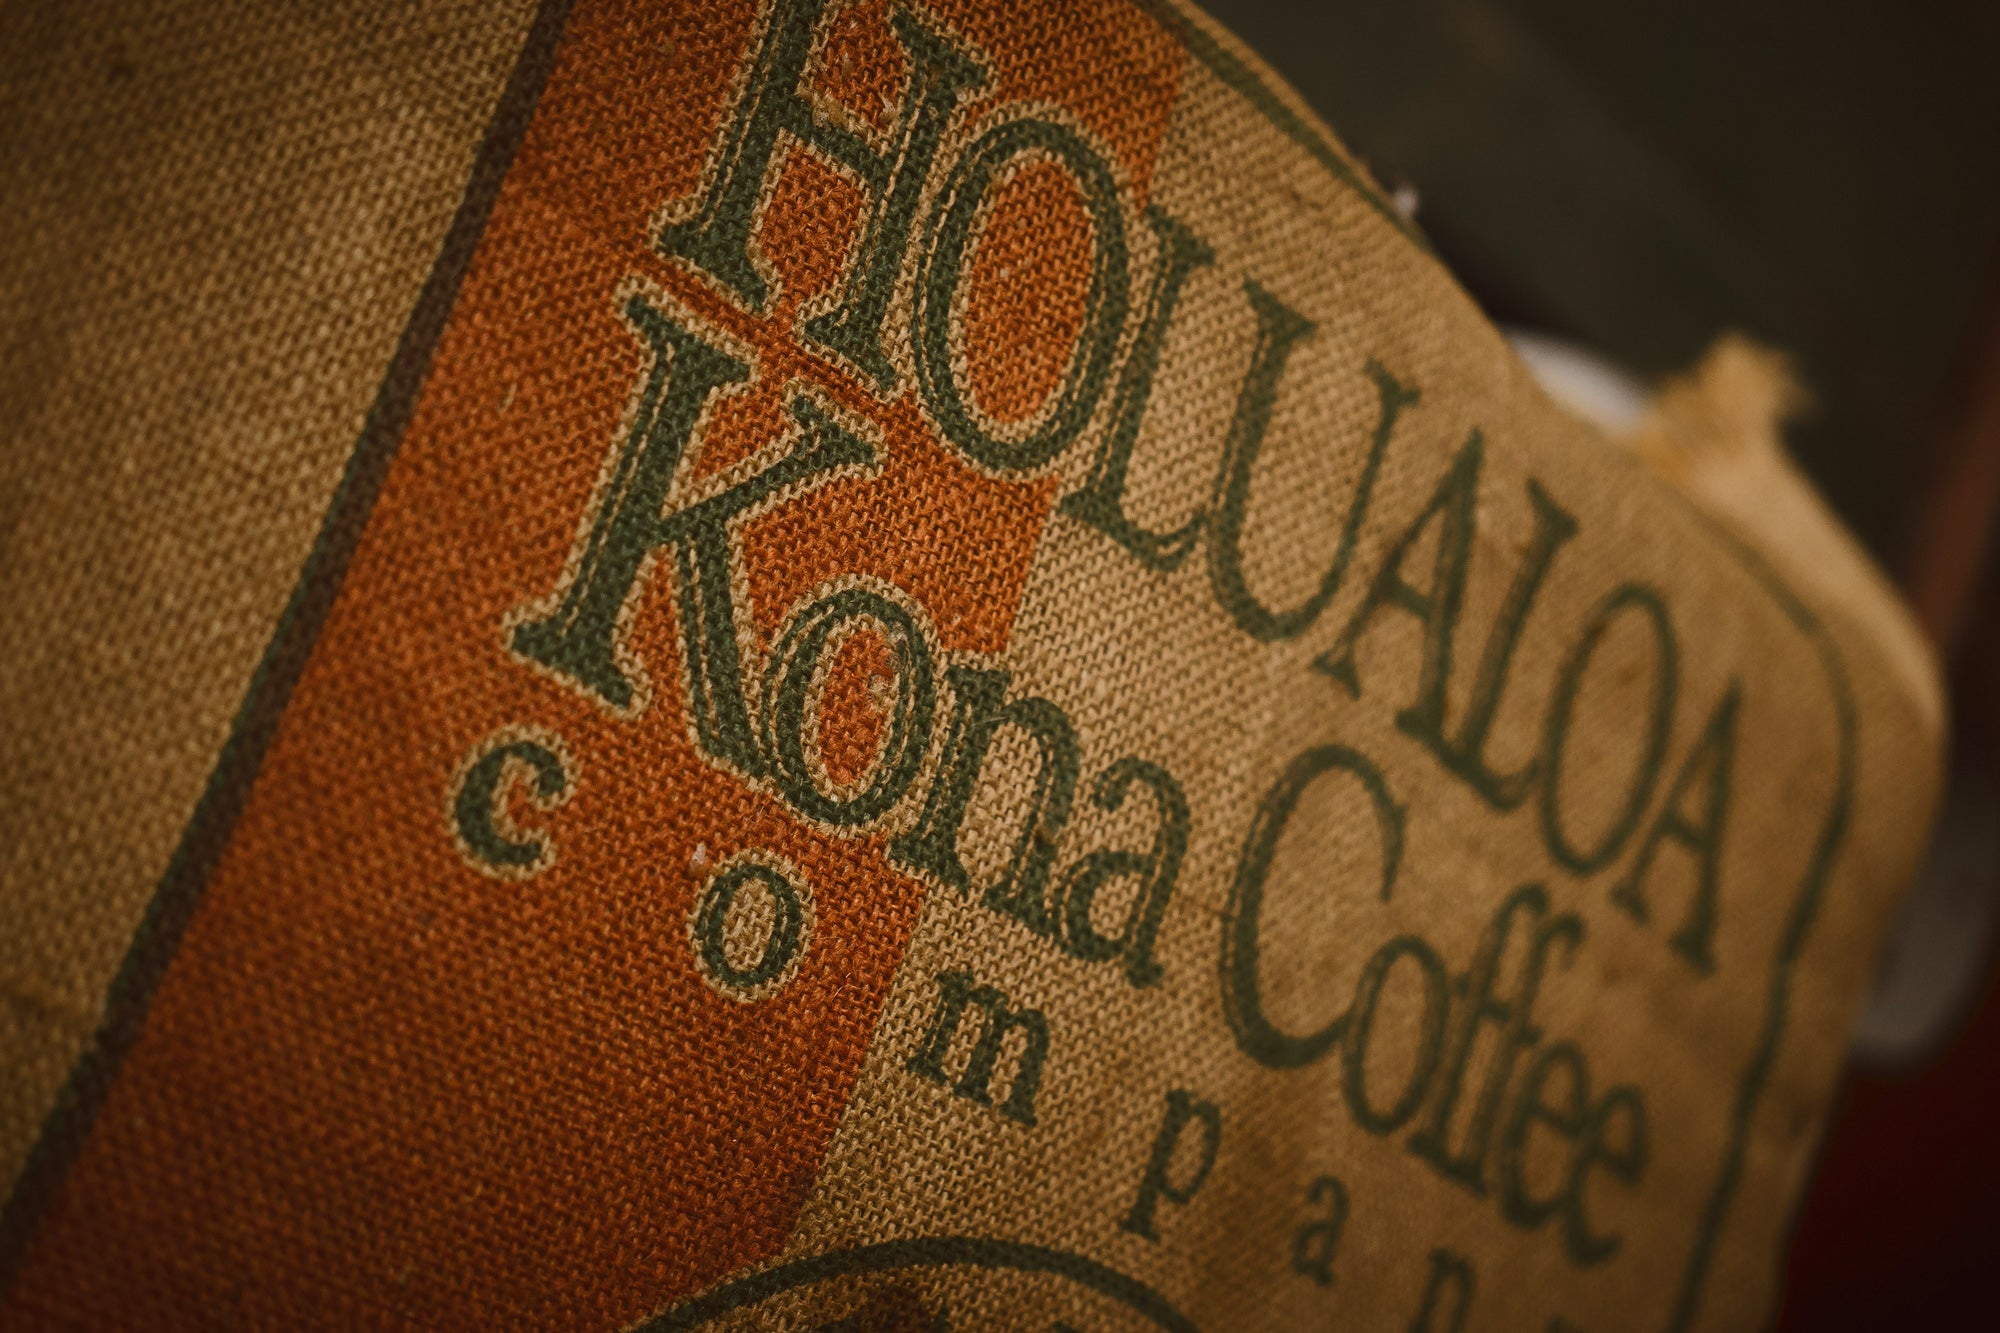 Close up shot of Hōlualoa Kona coffee company logo on a burlap sack holding coffee